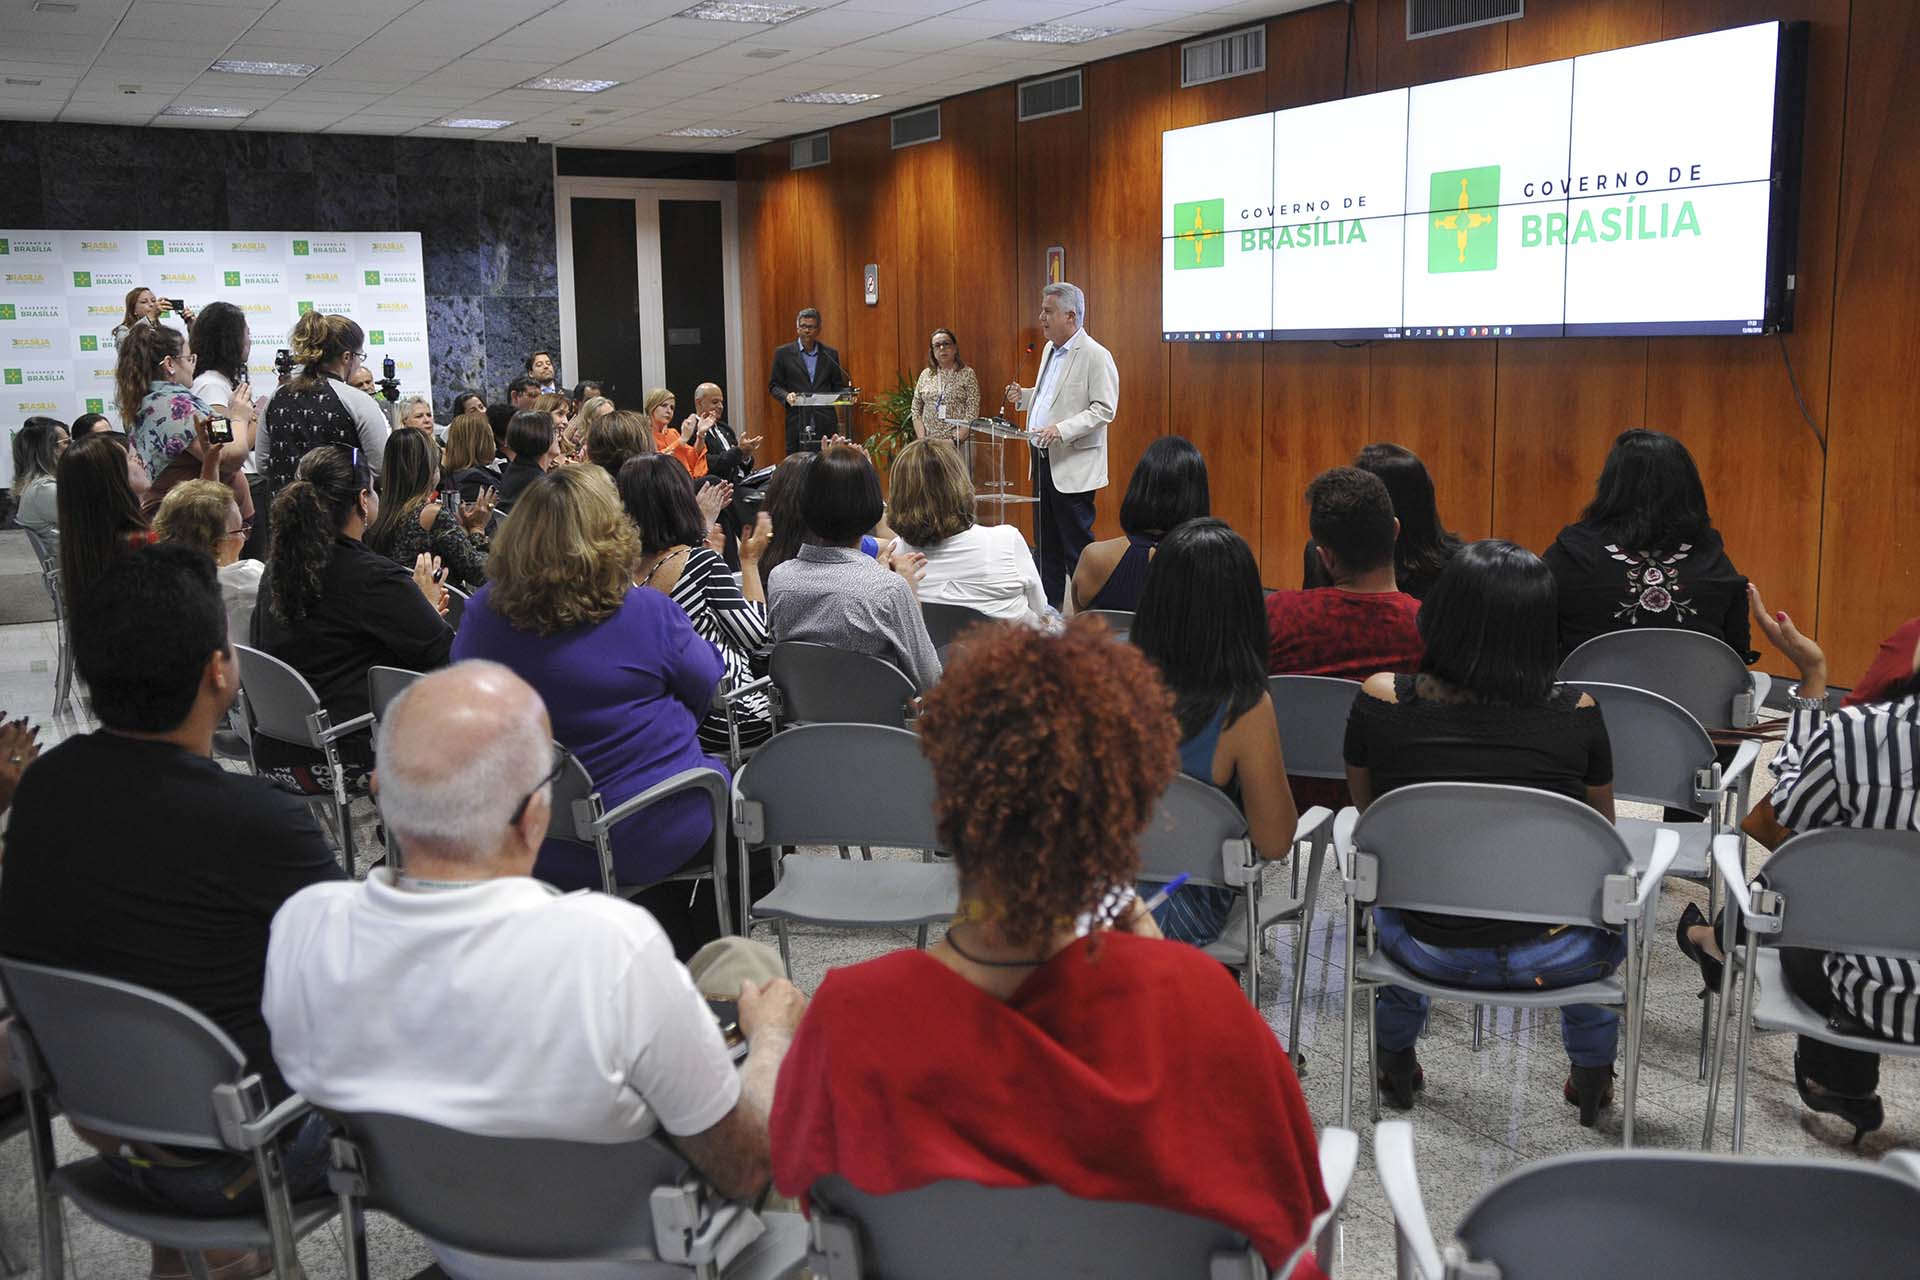 Coletivo Mulheres do Brasil foi recebido pelo governado Rollemberg nesta quarta-feira (13). Foto: Renato Araújo/Agência Brasília